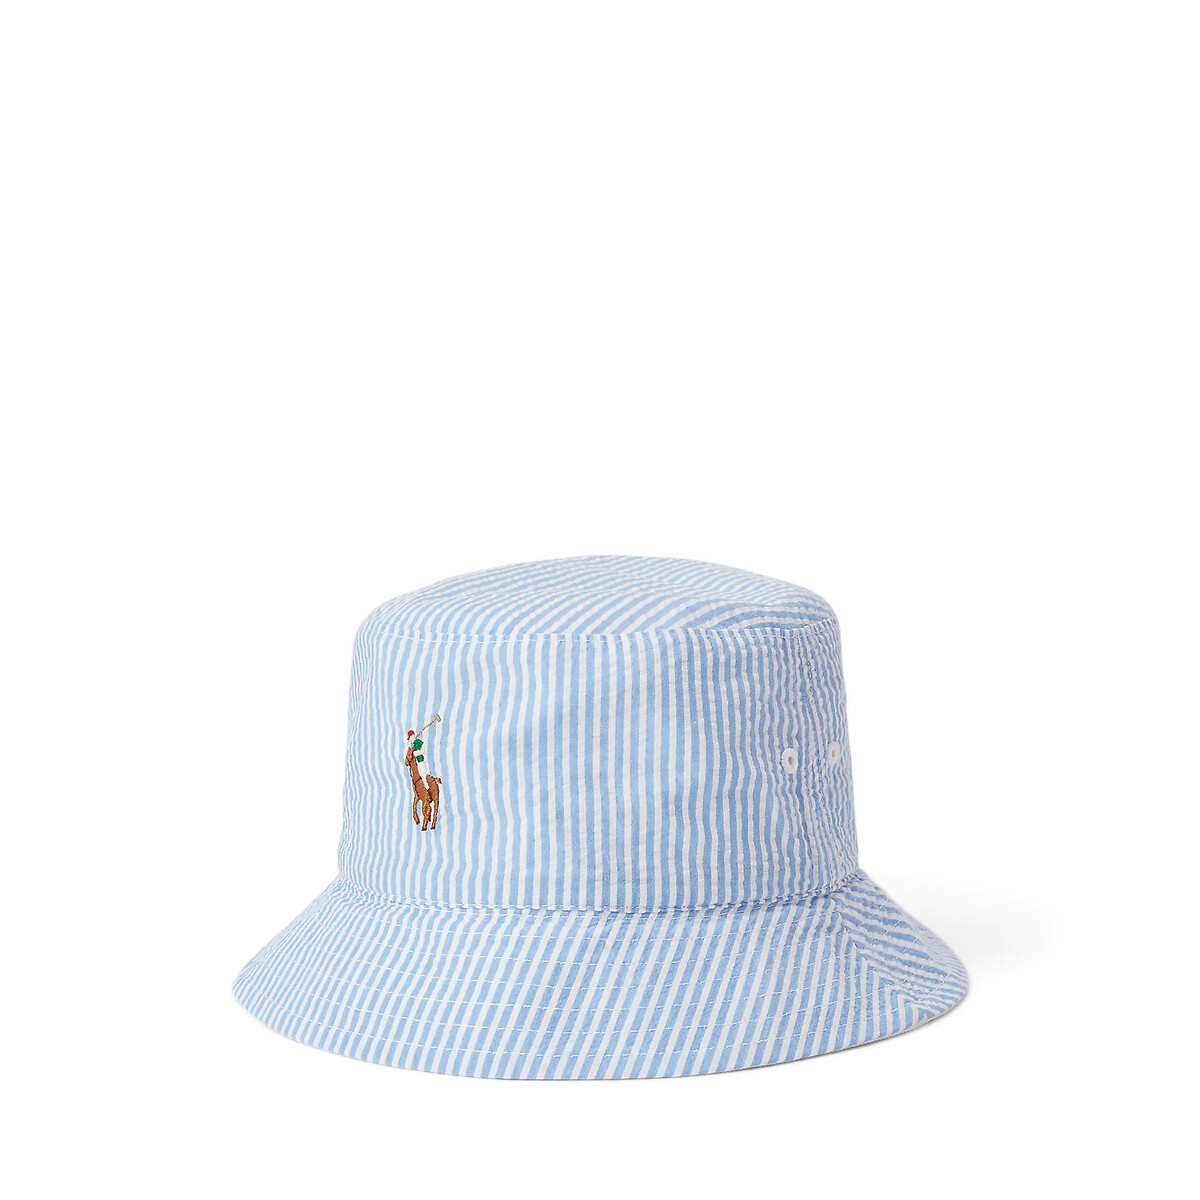 Image of Reversible Bucket Hat in Cotton Seersucker